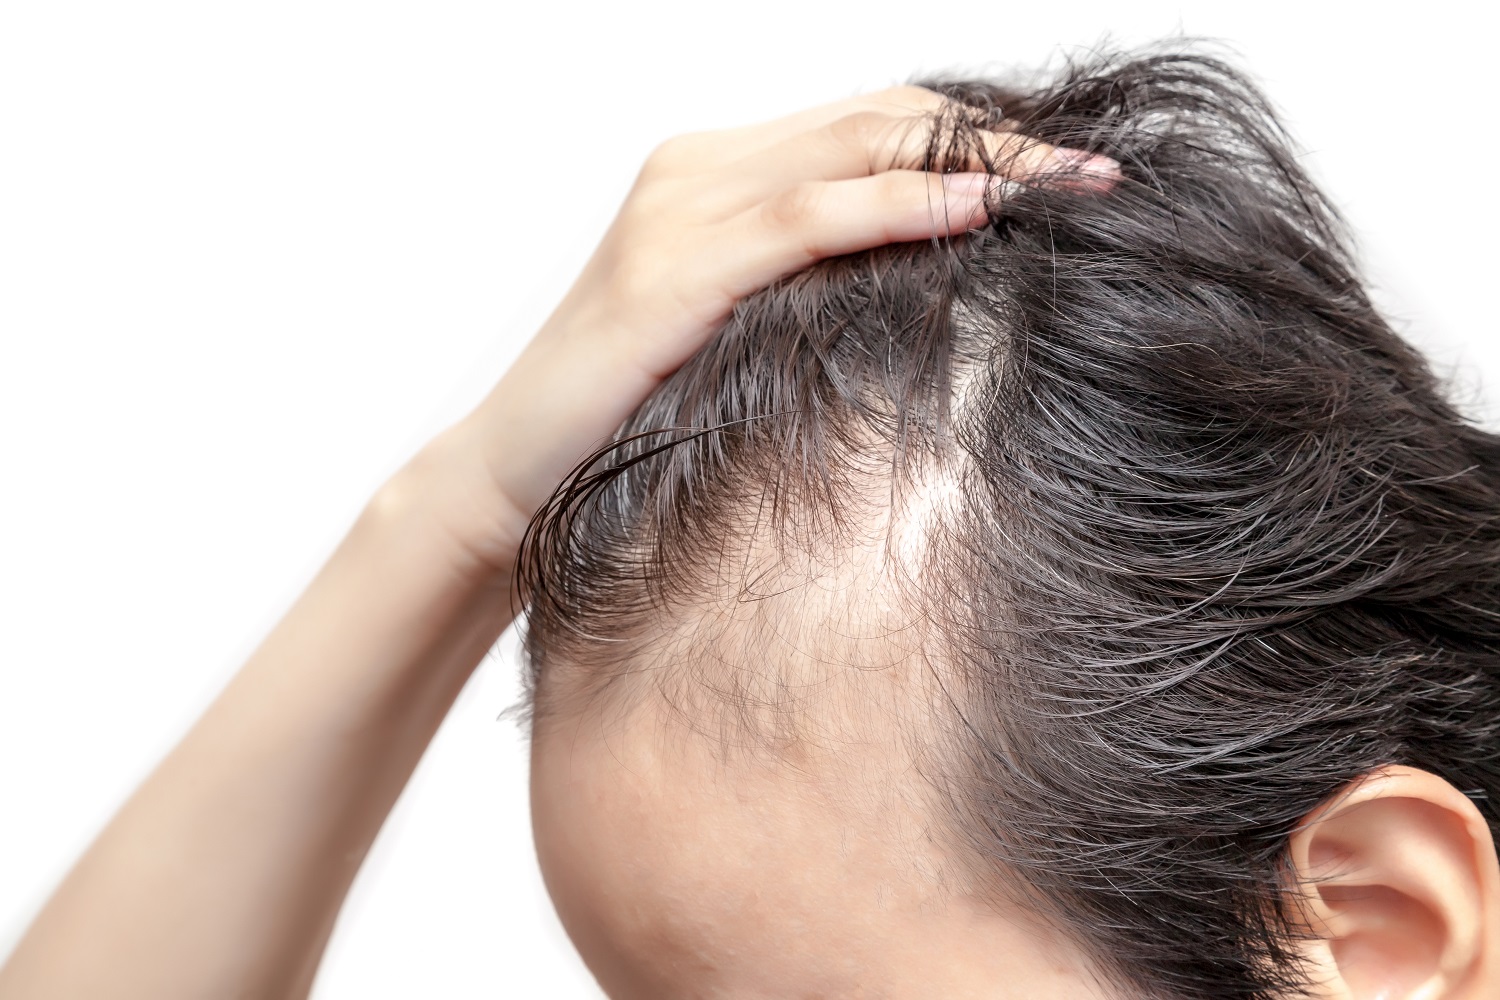 Cómo frenar la alopecia con remedios naturales, relajación baños calientes | Salud | La Revista | El Universo